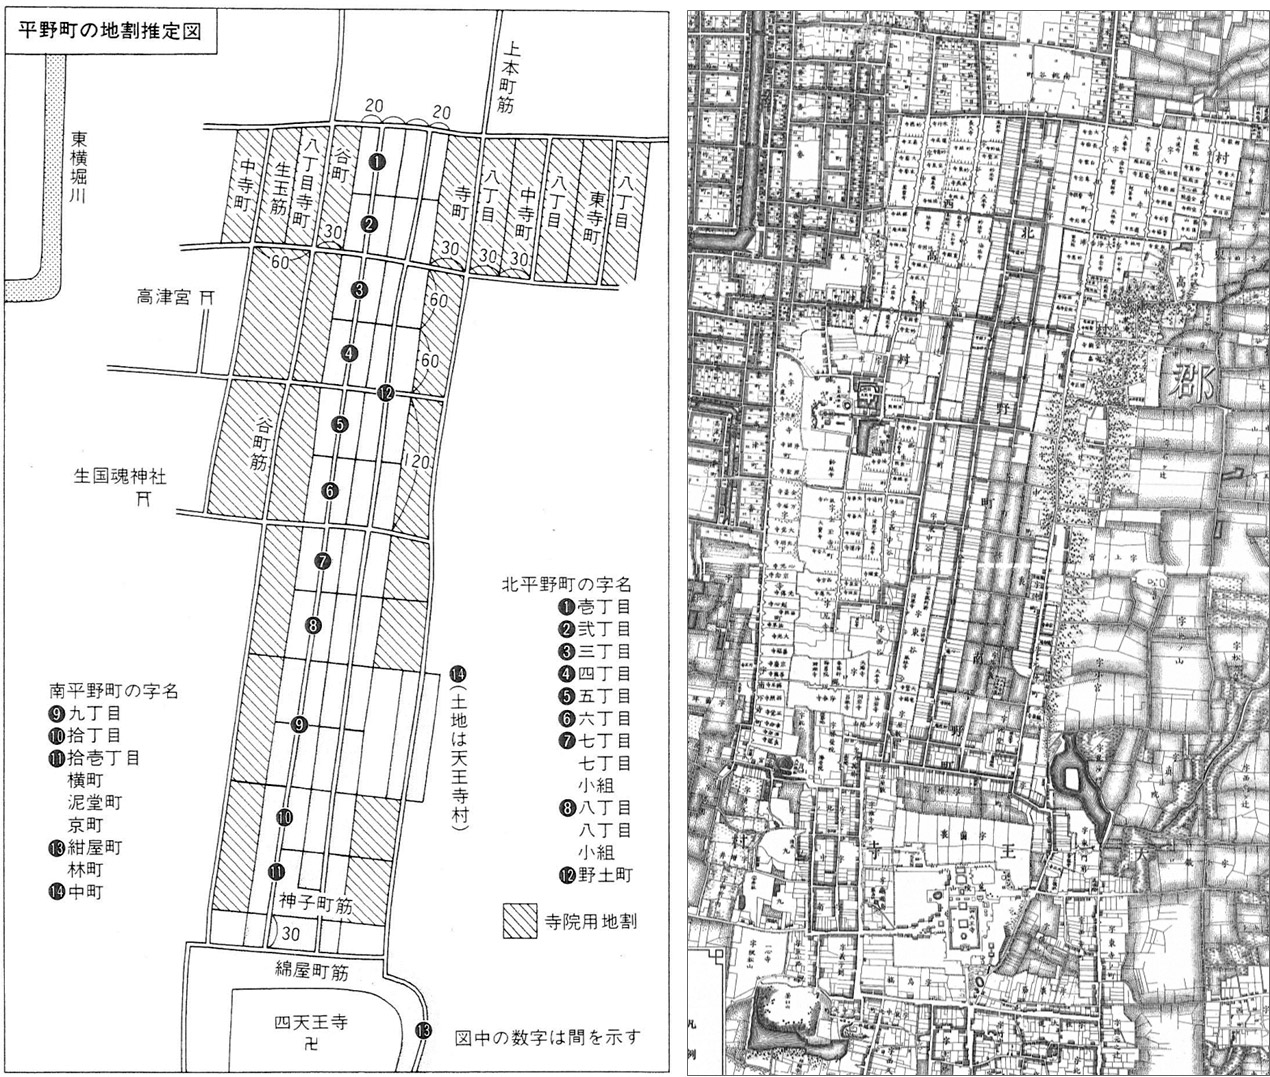 図2．平野町の地割推定図と『大阪実測図』